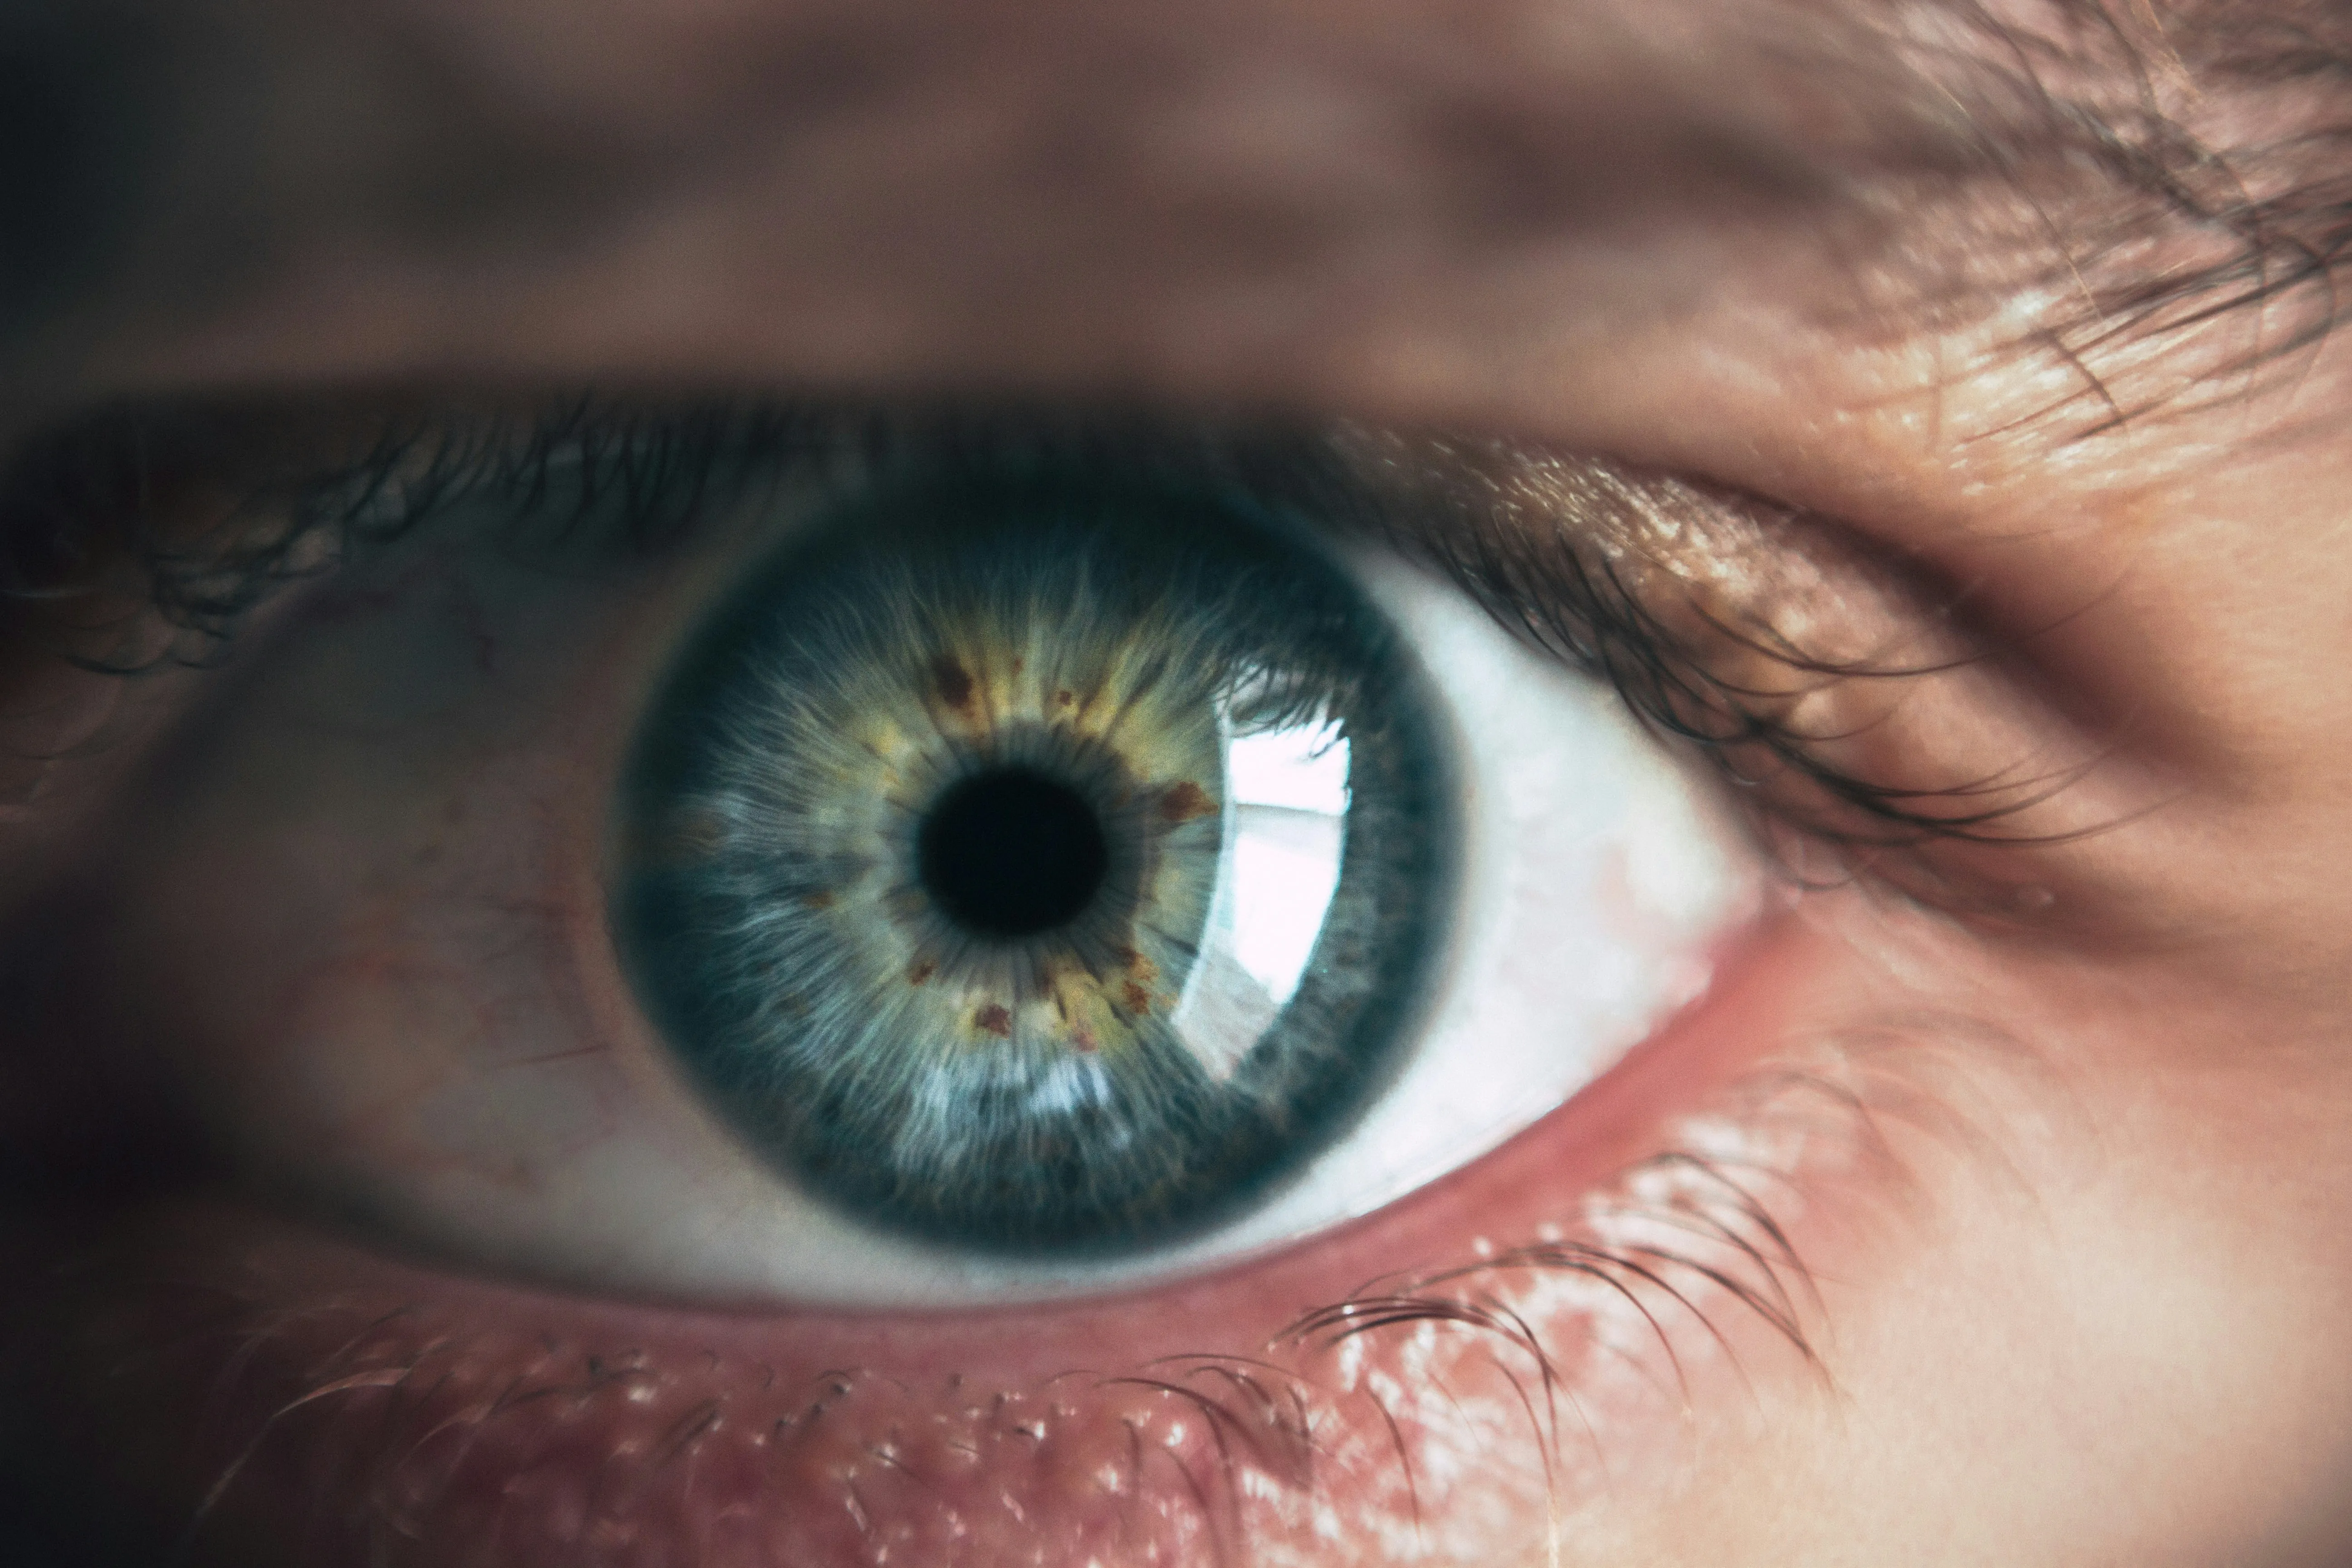 Офтальмолог назвал мушки перед глазами симптомом отслоения сетчатки глаза